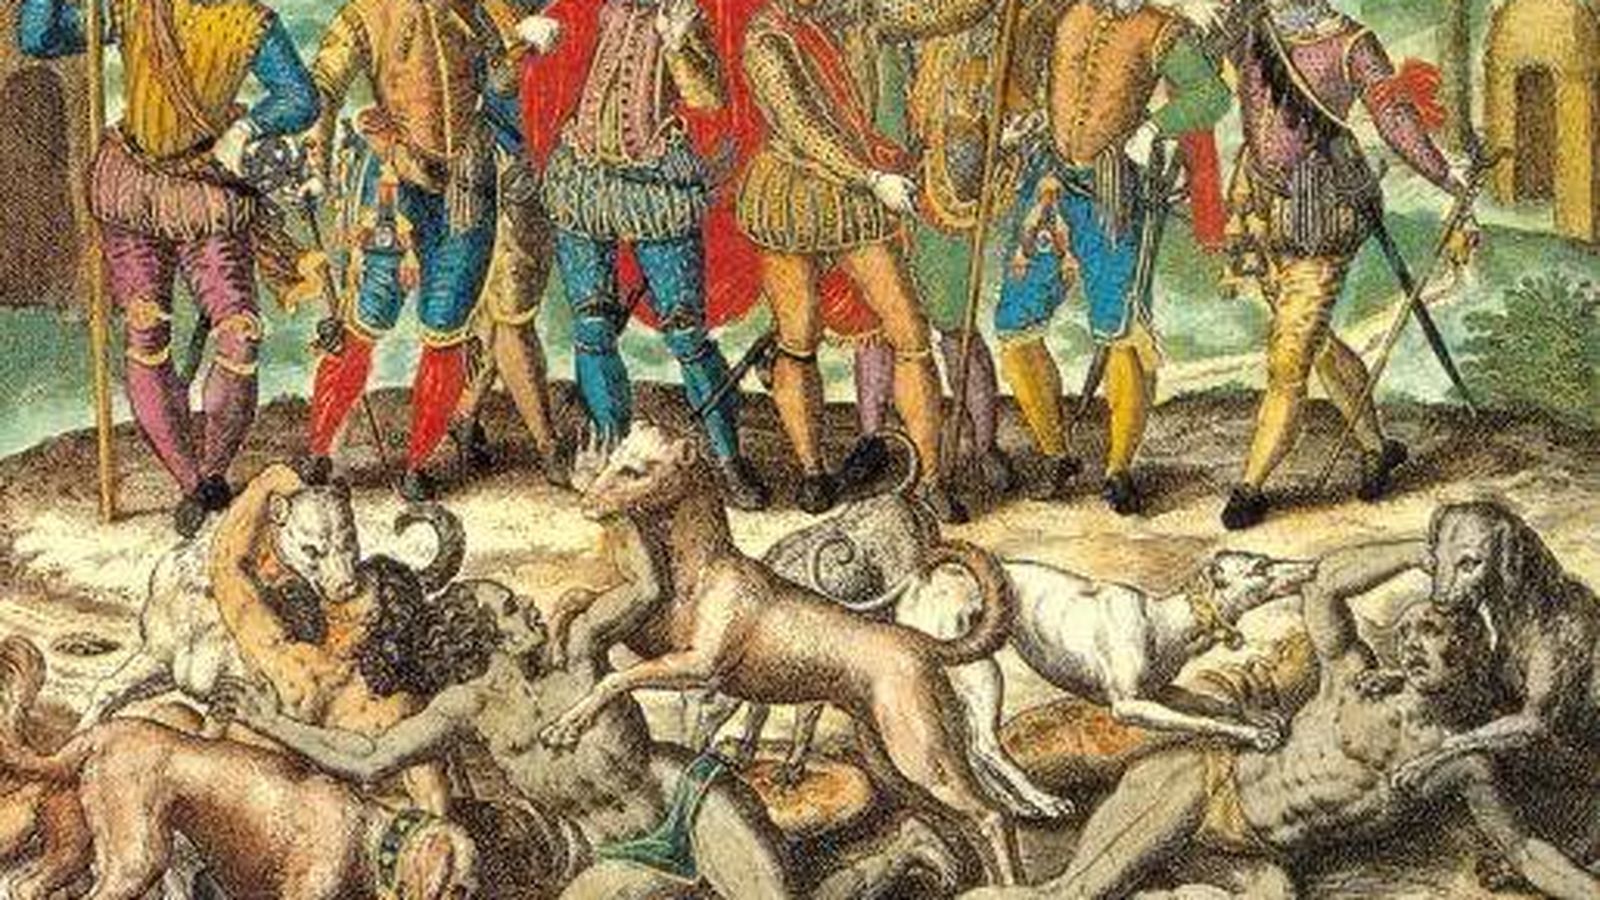 Foto: Aperreamiento de indígenas americanos por los conquistadores. Grabado de Theodor de Bry (s. XVI).